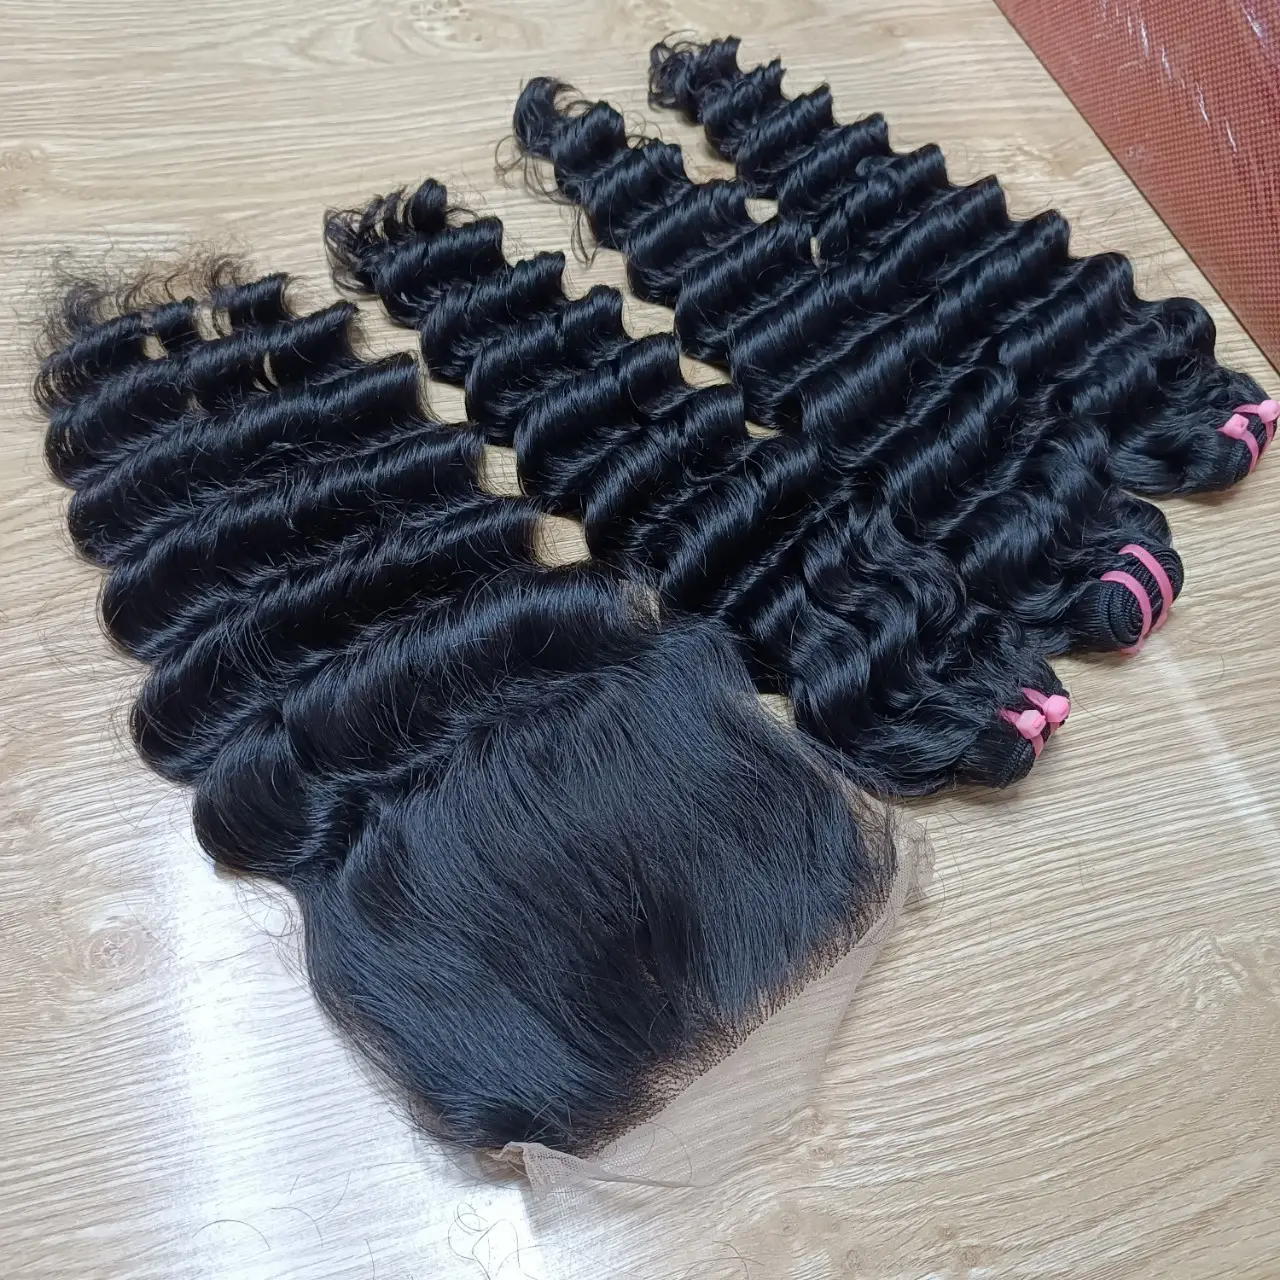 Tieflocken-Echthaar beste Qualität Haarbündel doppelter Flechtung vietnamesisches jungfräuliches kutikular ausgerichtetes Haar